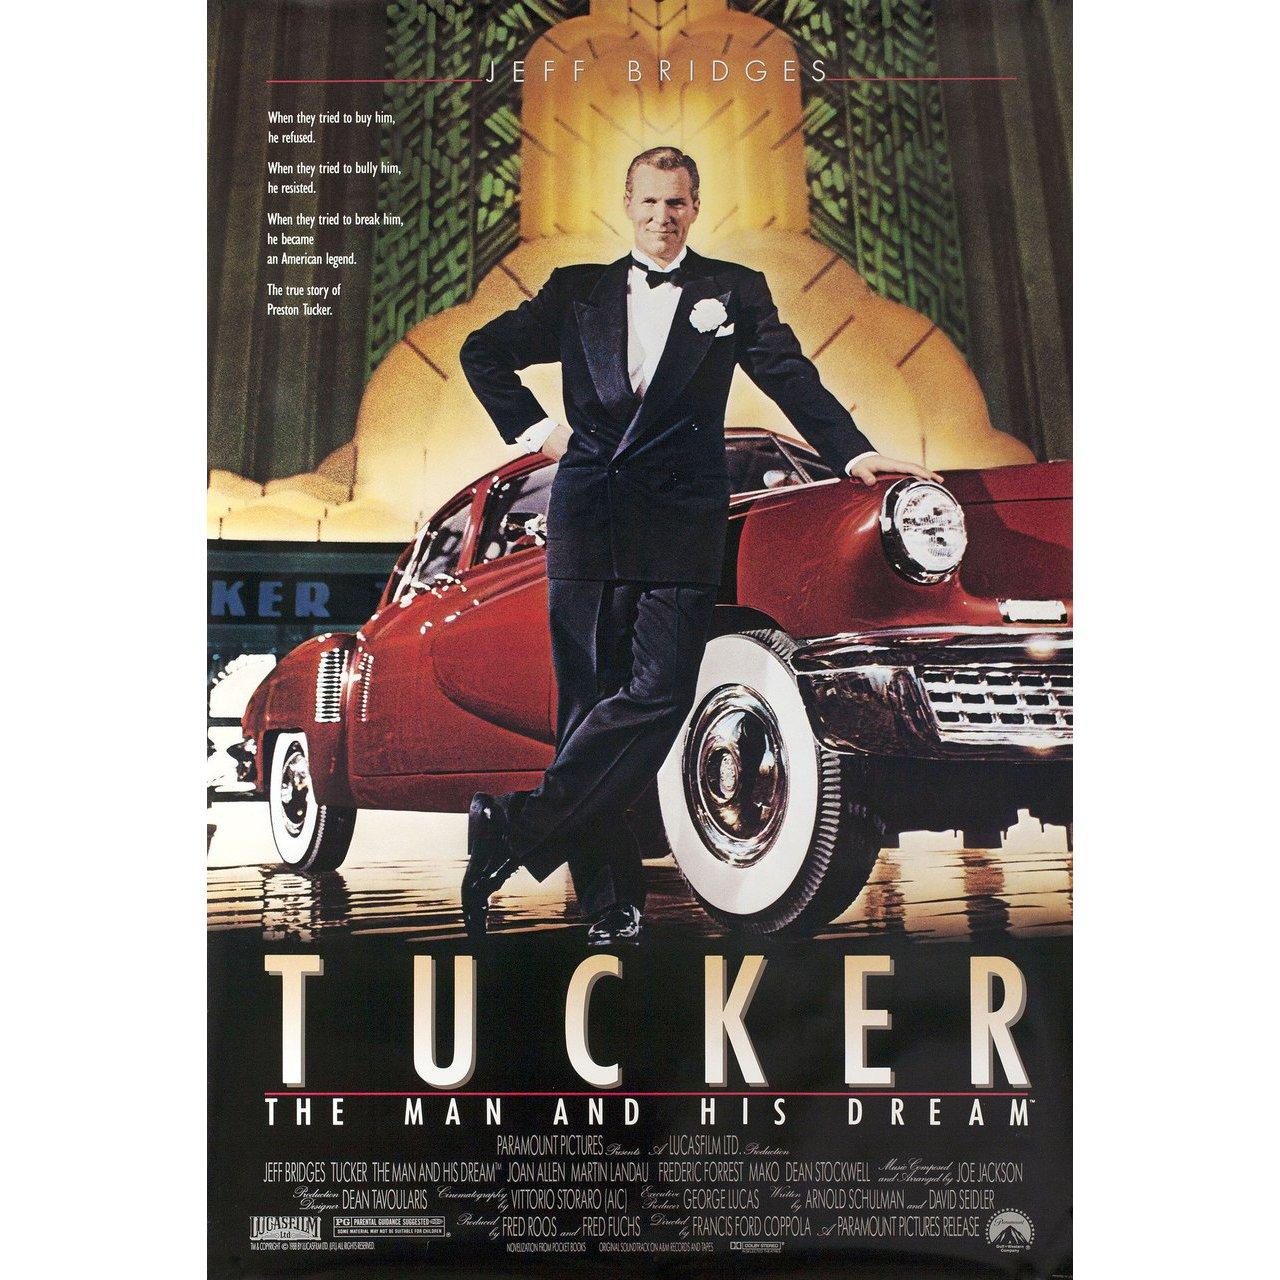 Affiche américaine originale de 1988 pour le film Tucker : The Man and His Dream réalisé par Francis Ford Coppola avec Jeff Bridges / Joan Allen / Martin Landau / Frederic Forrest. Très bon état, roulé. Veuillez noter que la taille est indiquée en